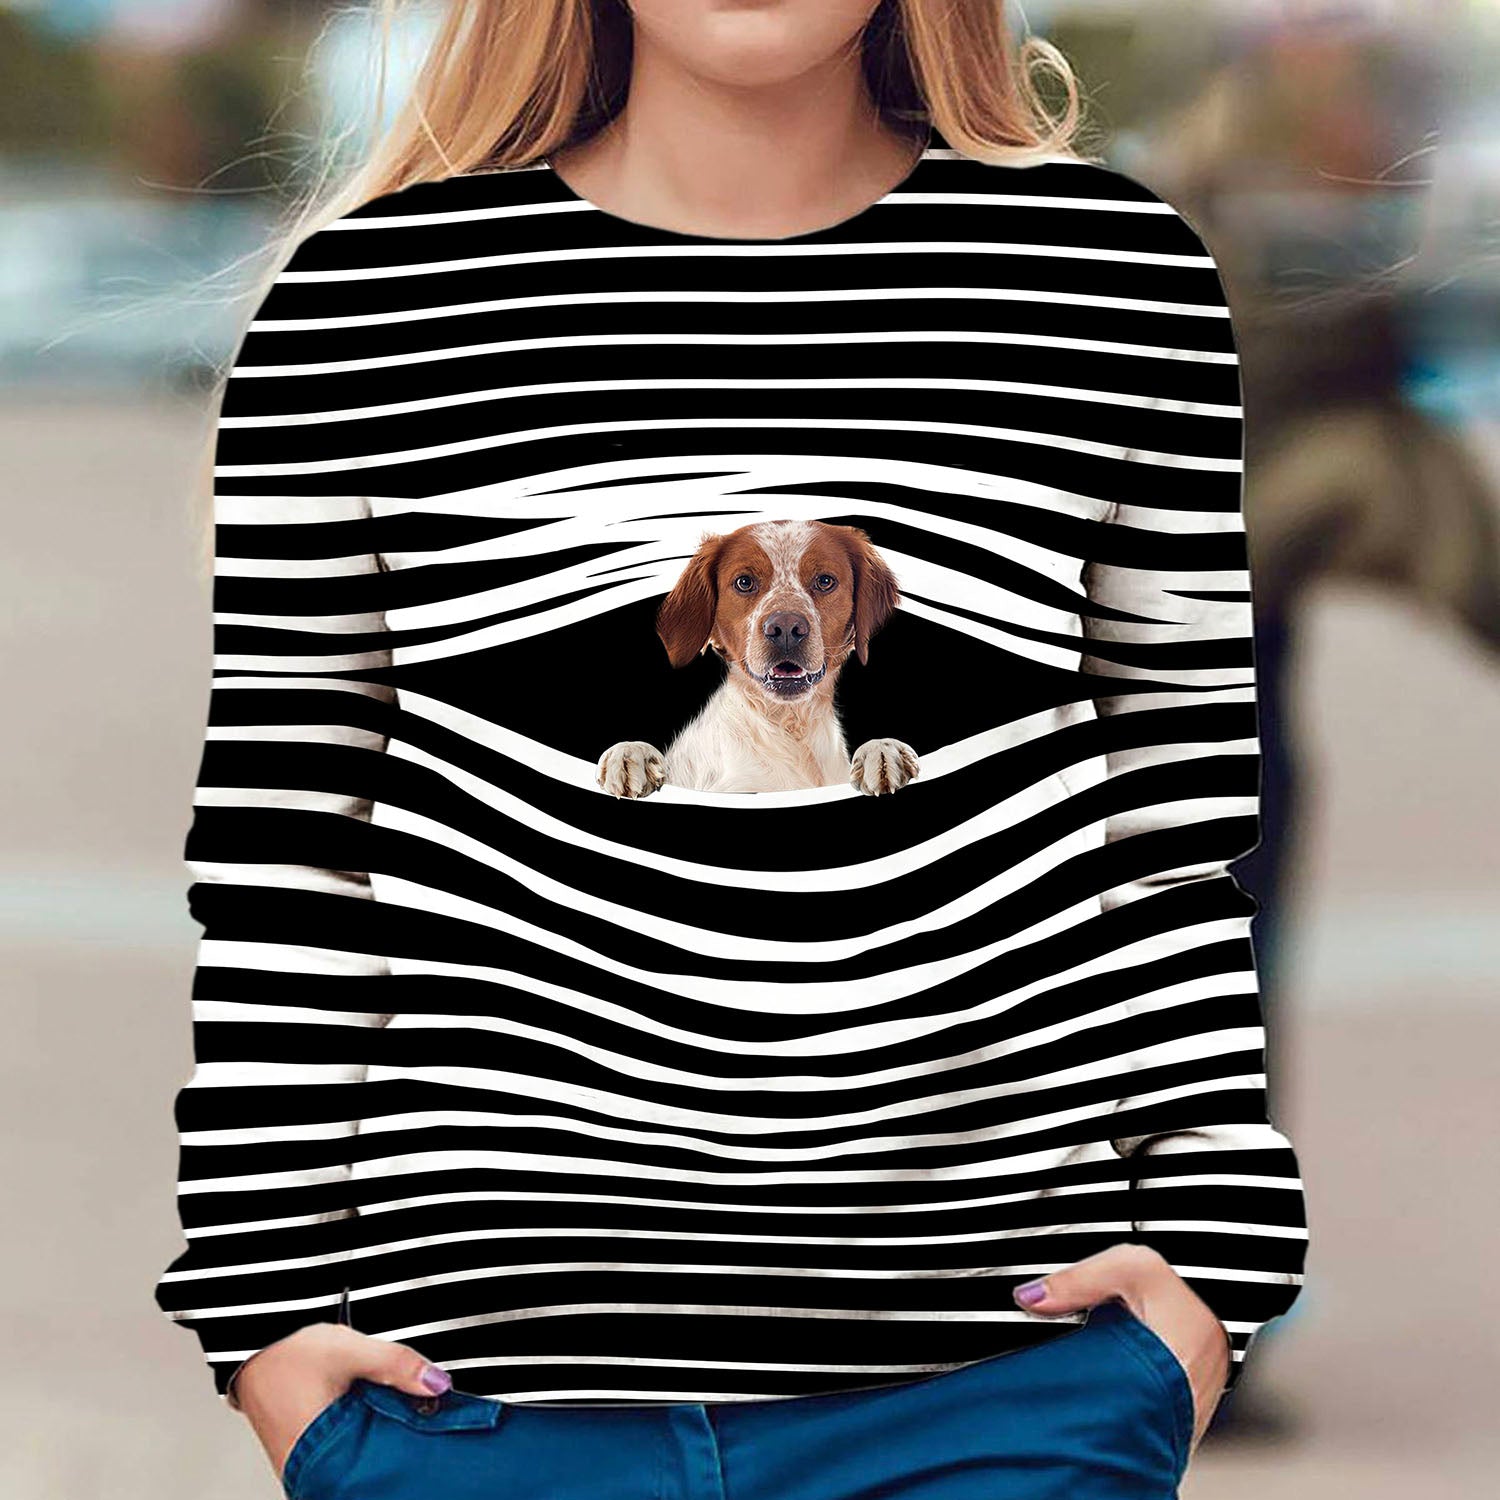 Brittany - Stripe - Premium Sweater